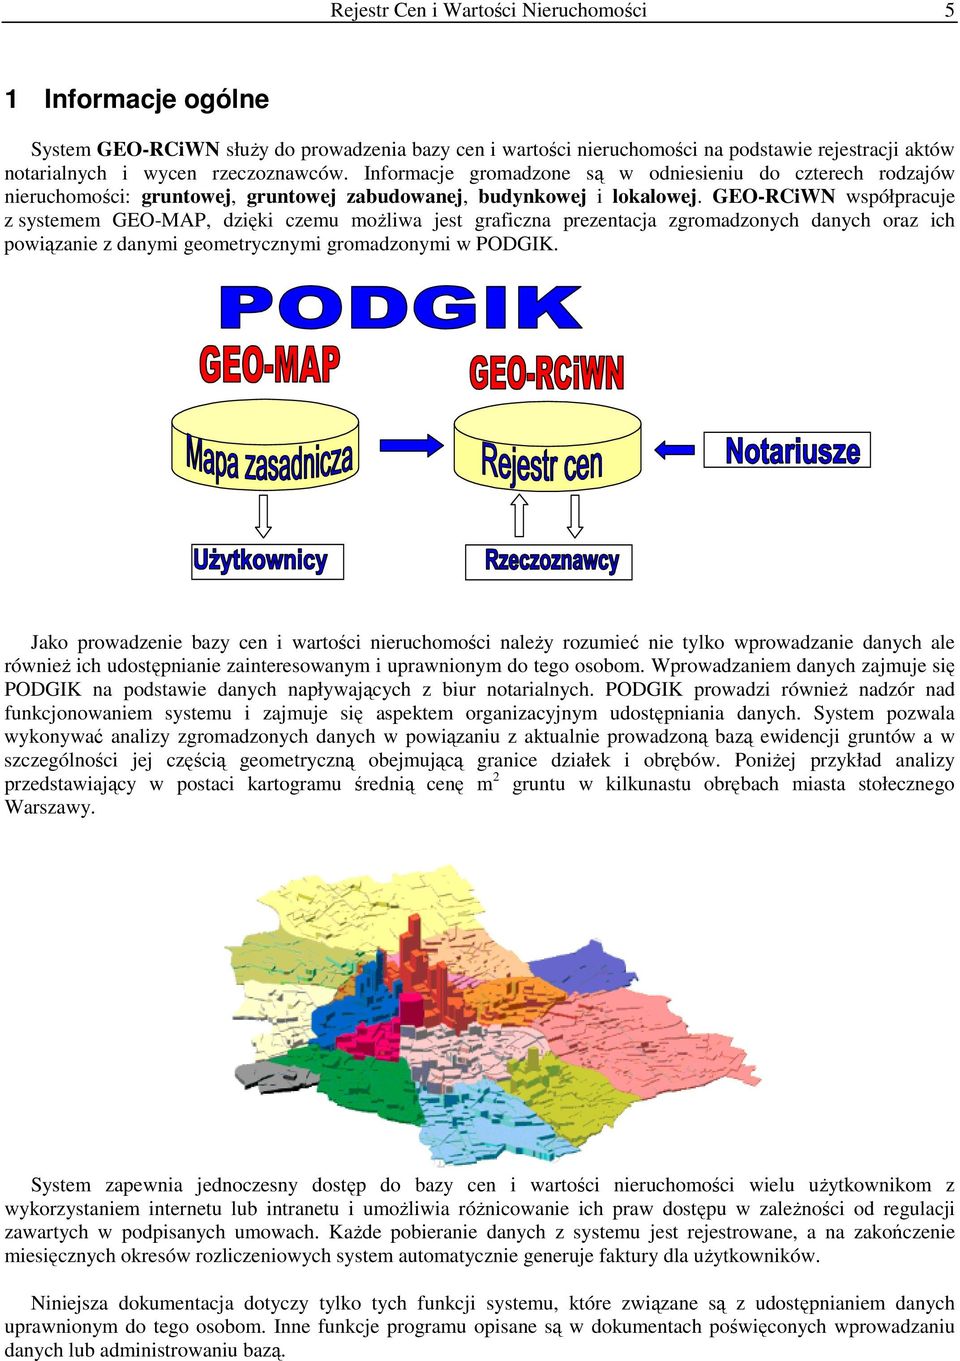 GEO-RCiWN współpracuje z systemem GEO-MAP, dzięki czemu moŝliwa jest graficzna prezentacja zgromadzonych danych oraz ich powiązanie z danymi geometrycznymi gromadzonymi w PODGIK.